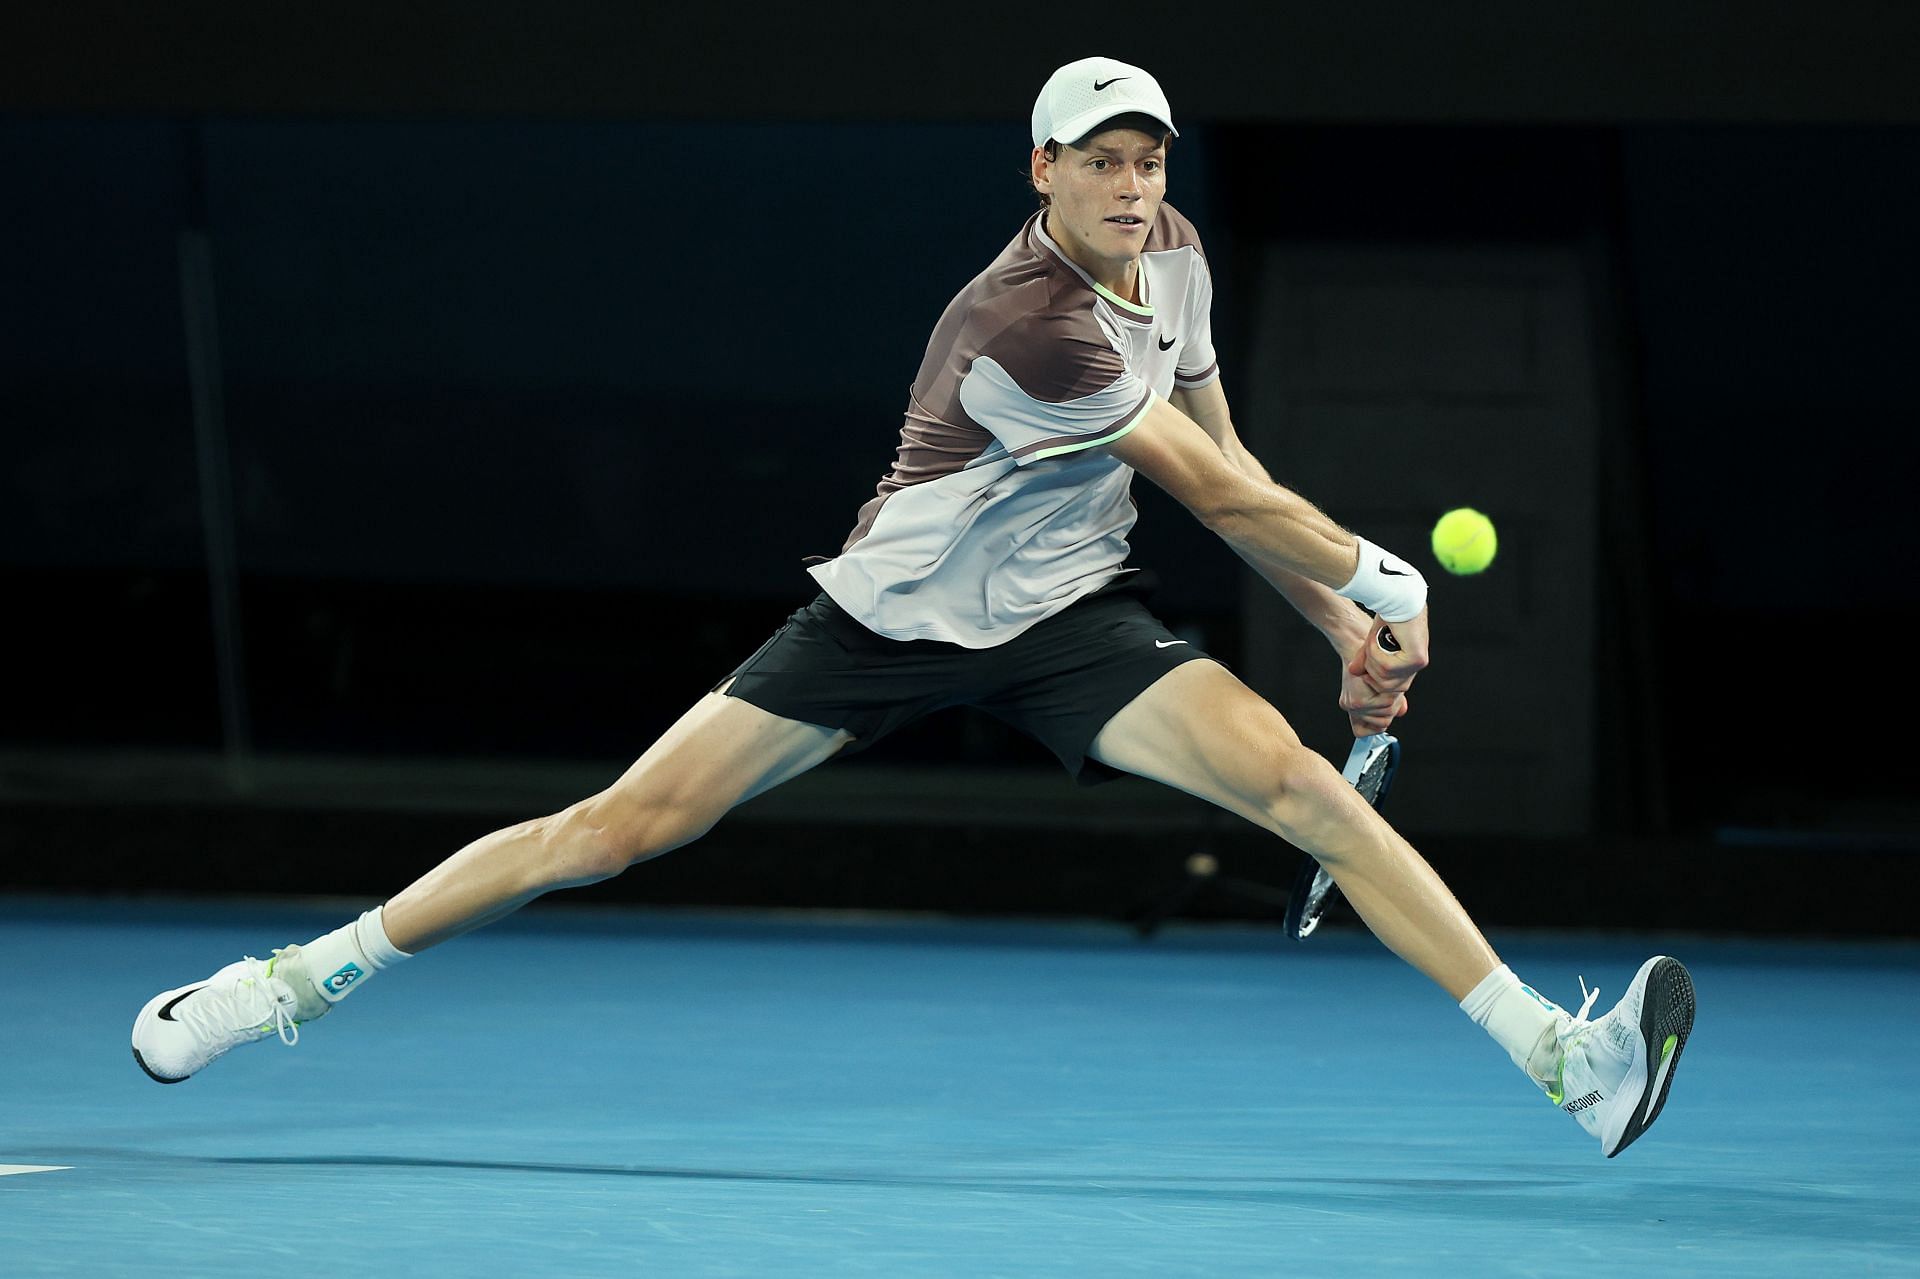 Jannik Sinner in action at the Australian Open